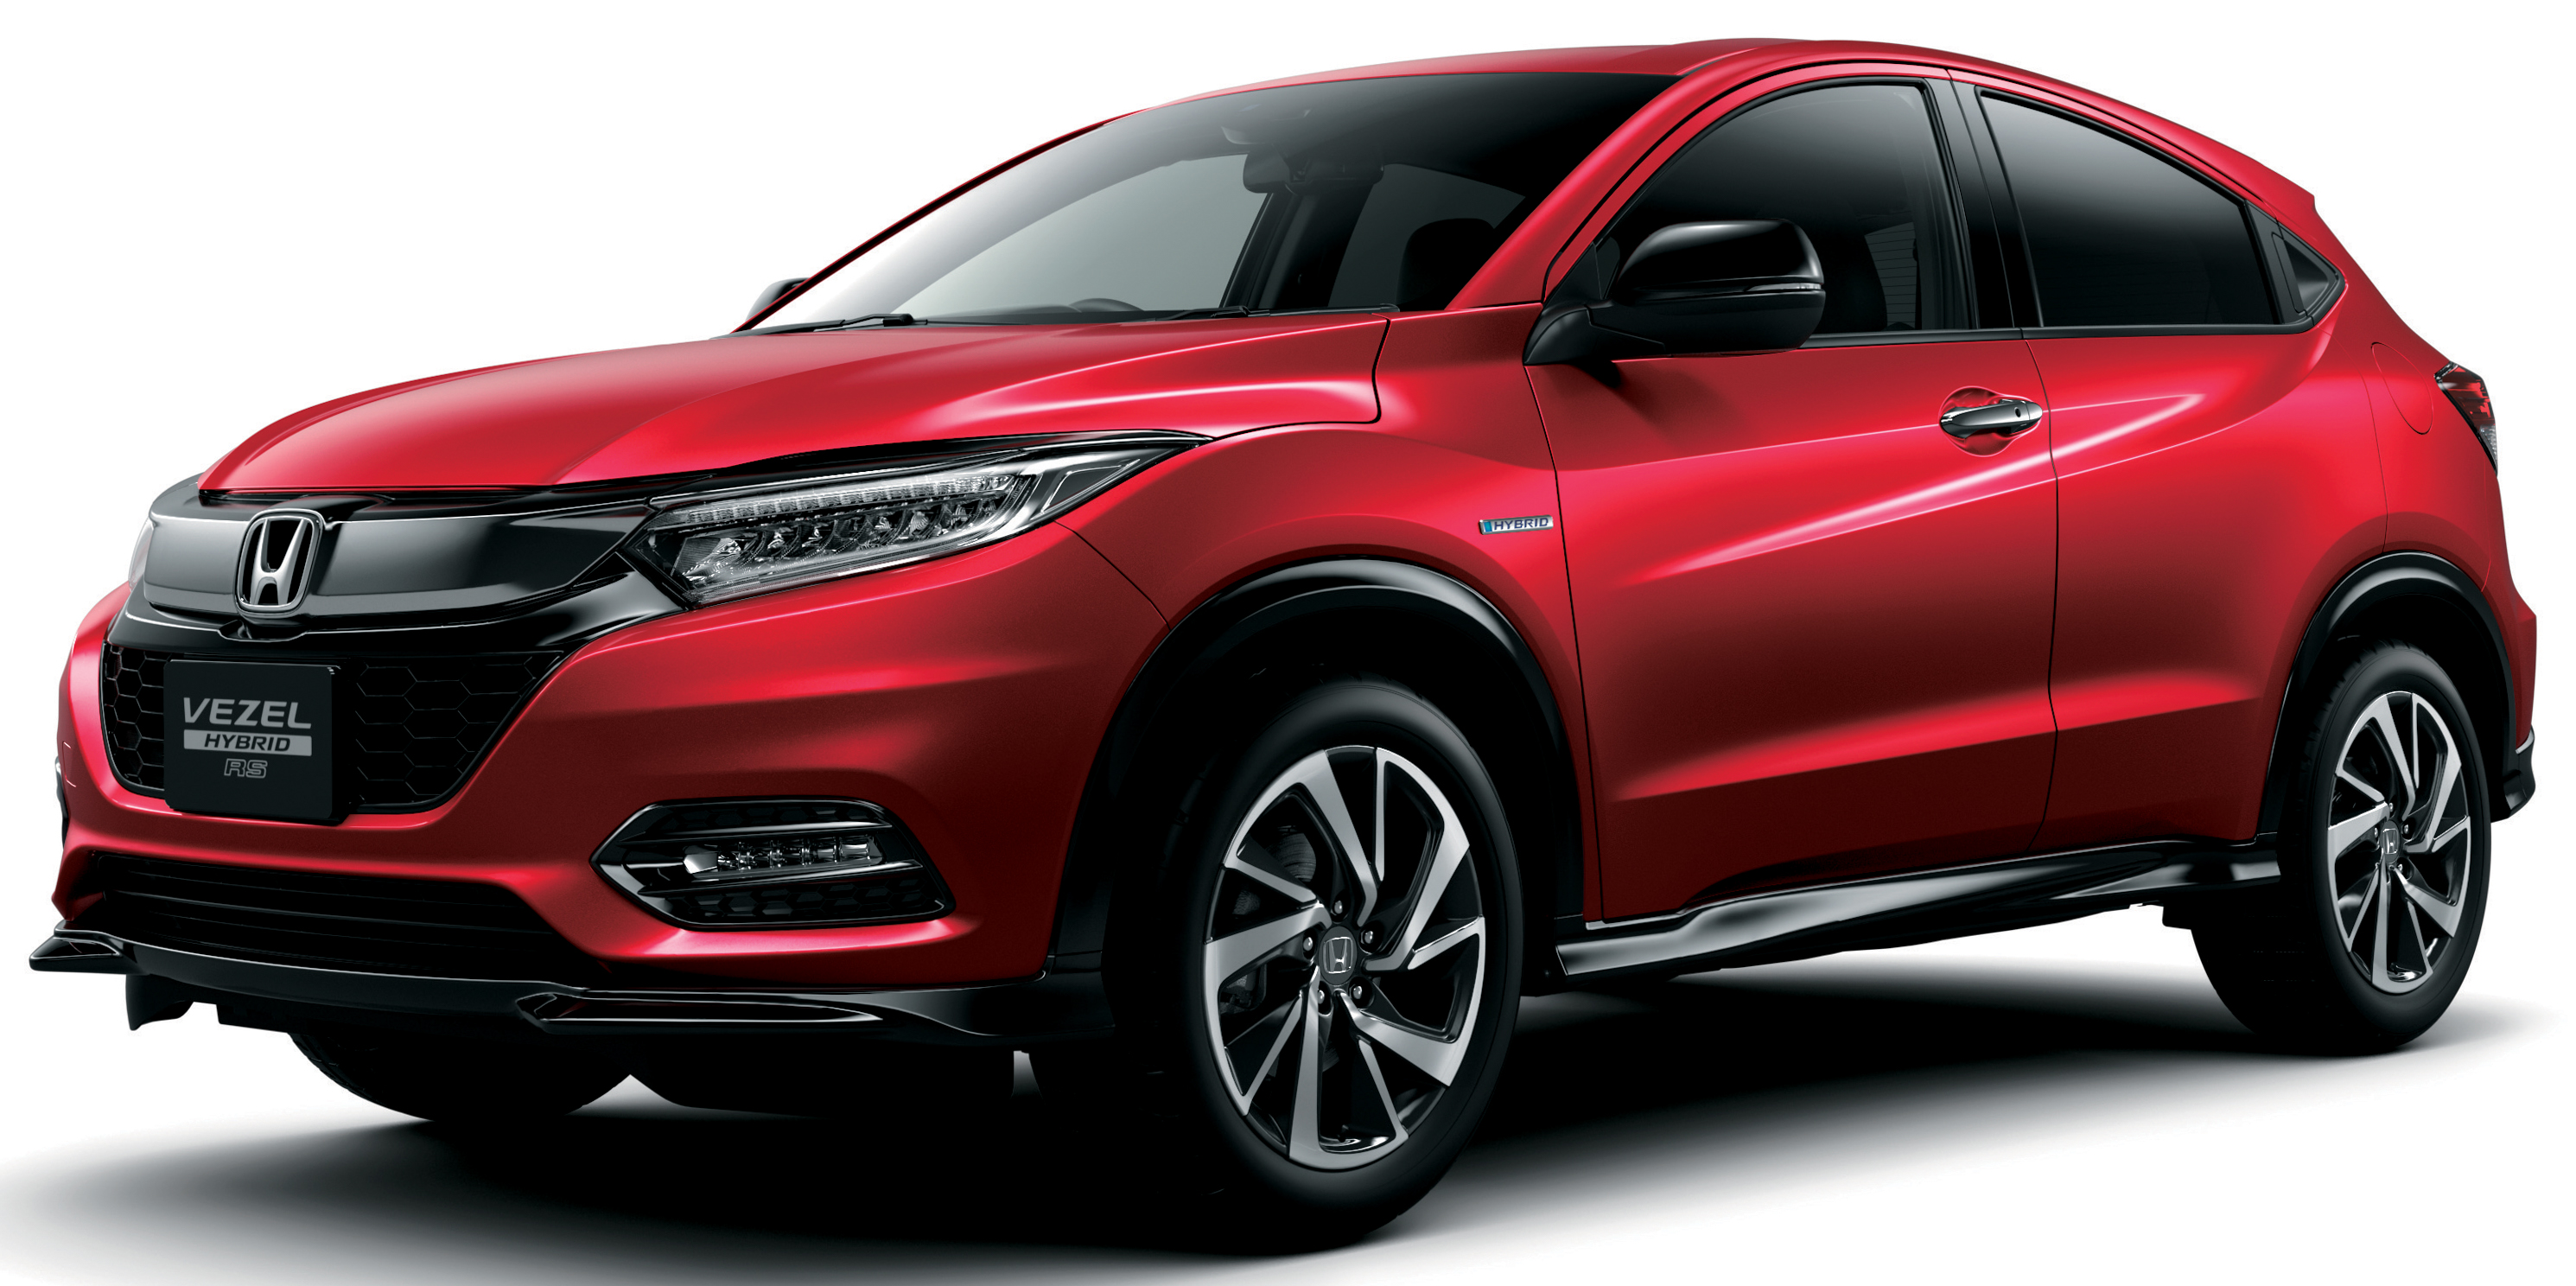 2018-honda-hr-v-facelift-new-looks-honda-sensing-as-standard-priced-from-rm76k-to-rm103k-in